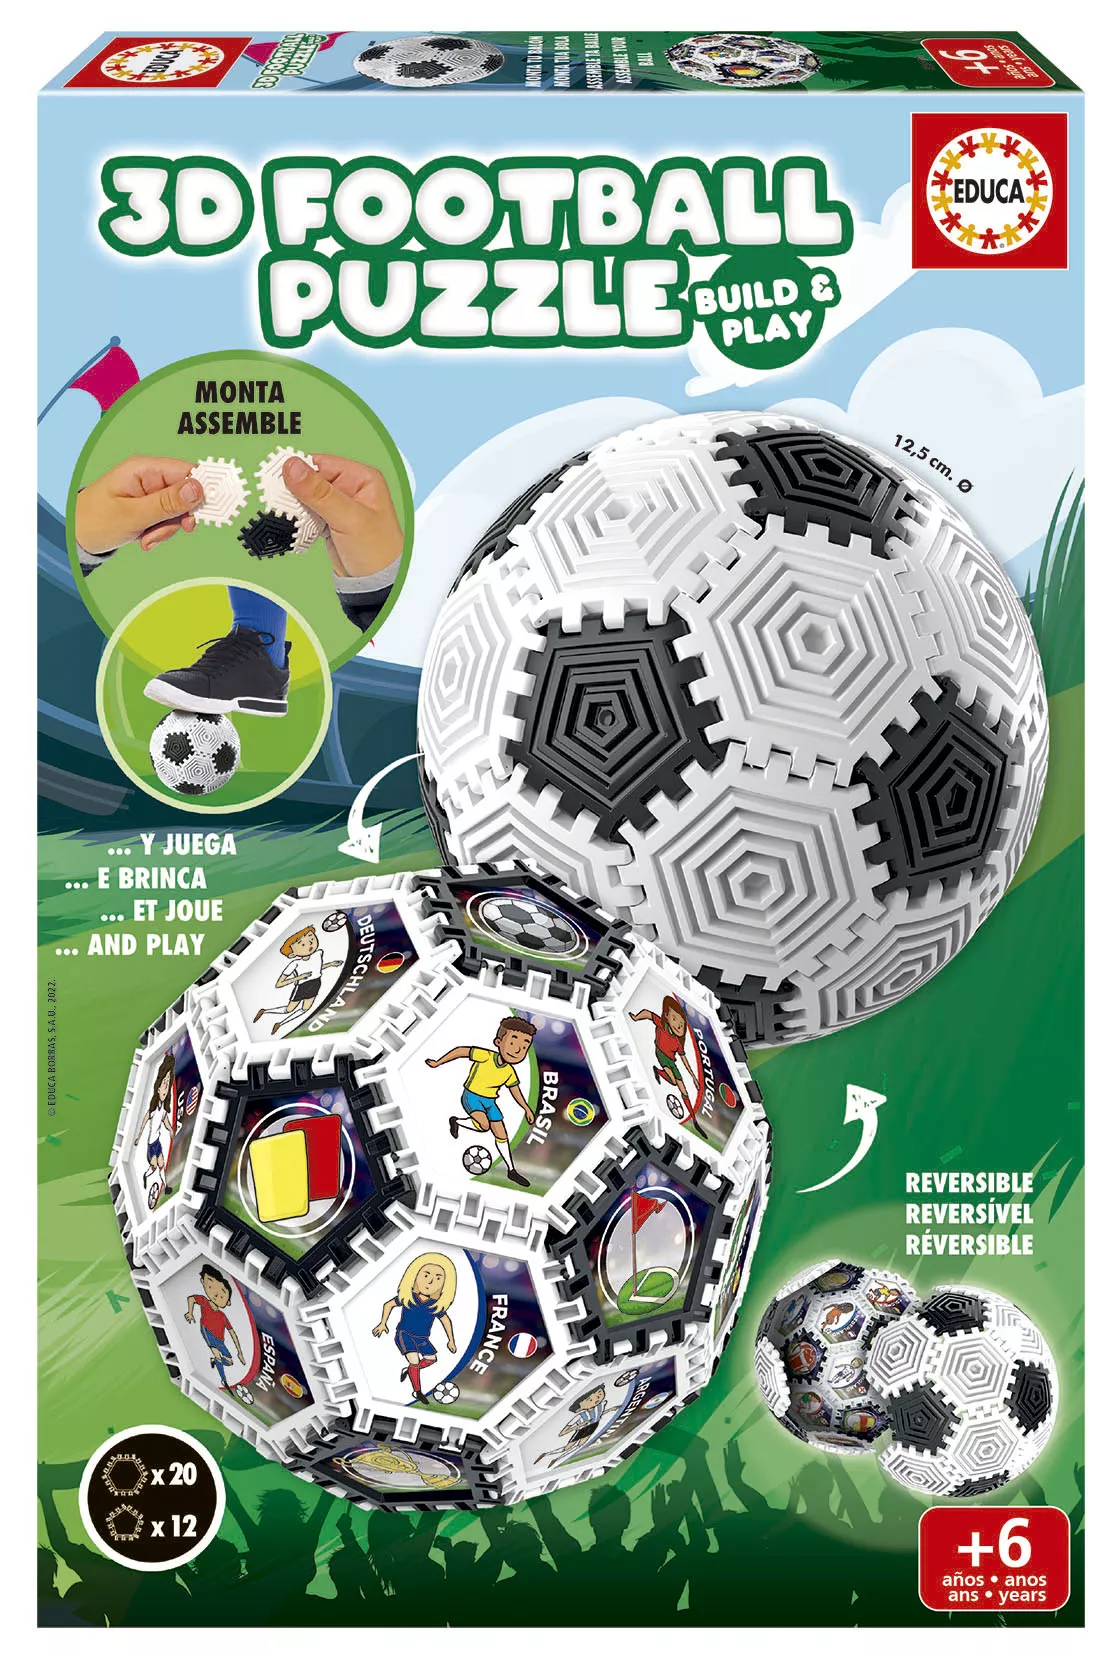 Puzzle 3D cu 32 de piese - Minge de fotbal